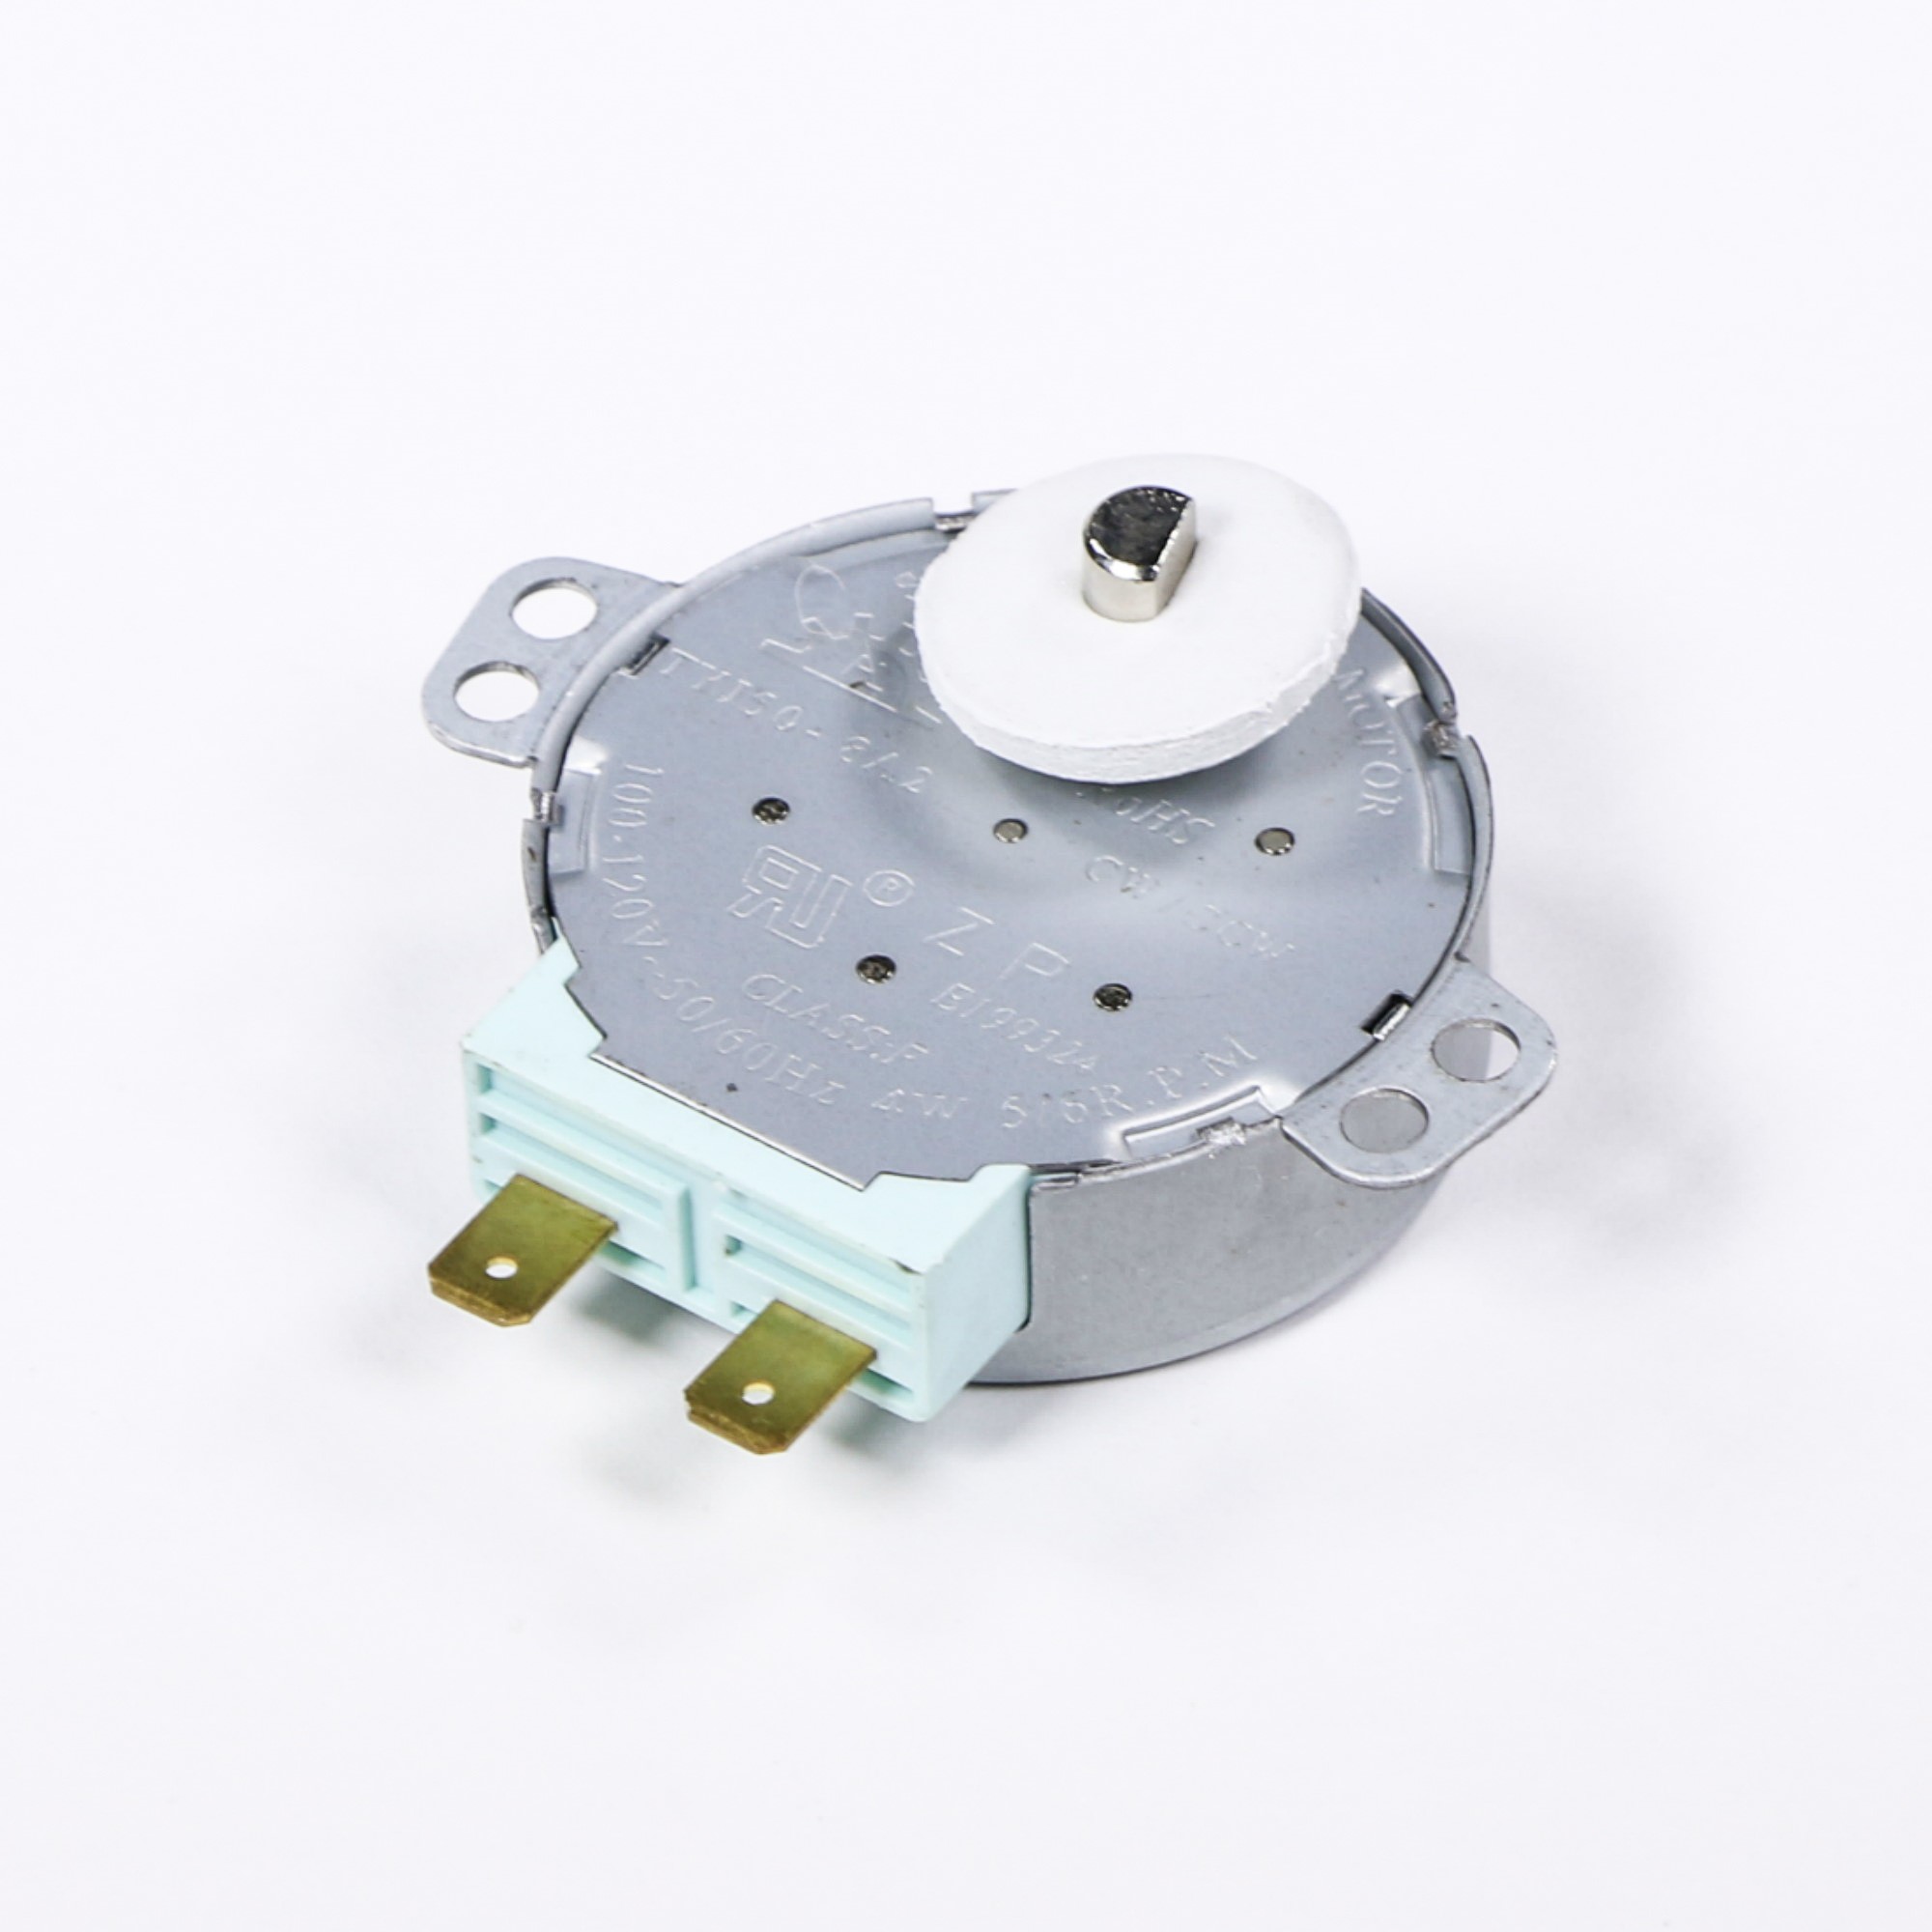 8183954 WHIRLPOOL Microwave turntable motor | eBay